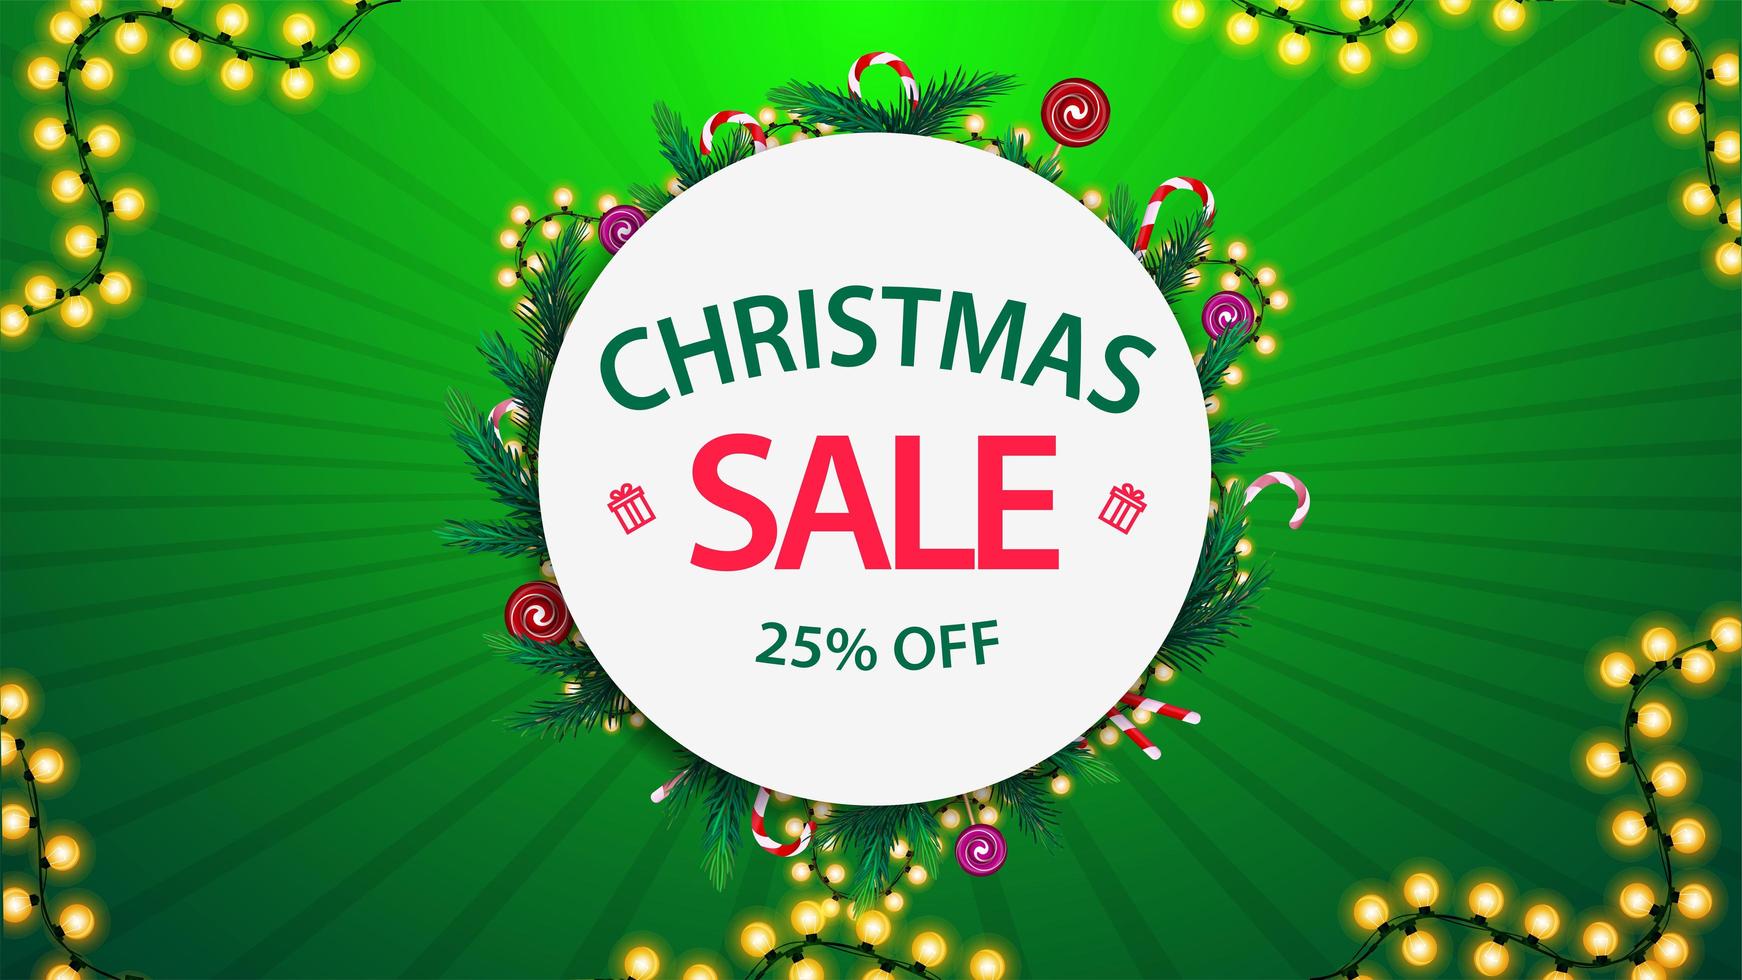 vente de Noël, jusqu'à 25 de réduction, bannière de réduction verte et blanche avec cadre rond de branches d'arbres de Noël et de guirlandes vecteur